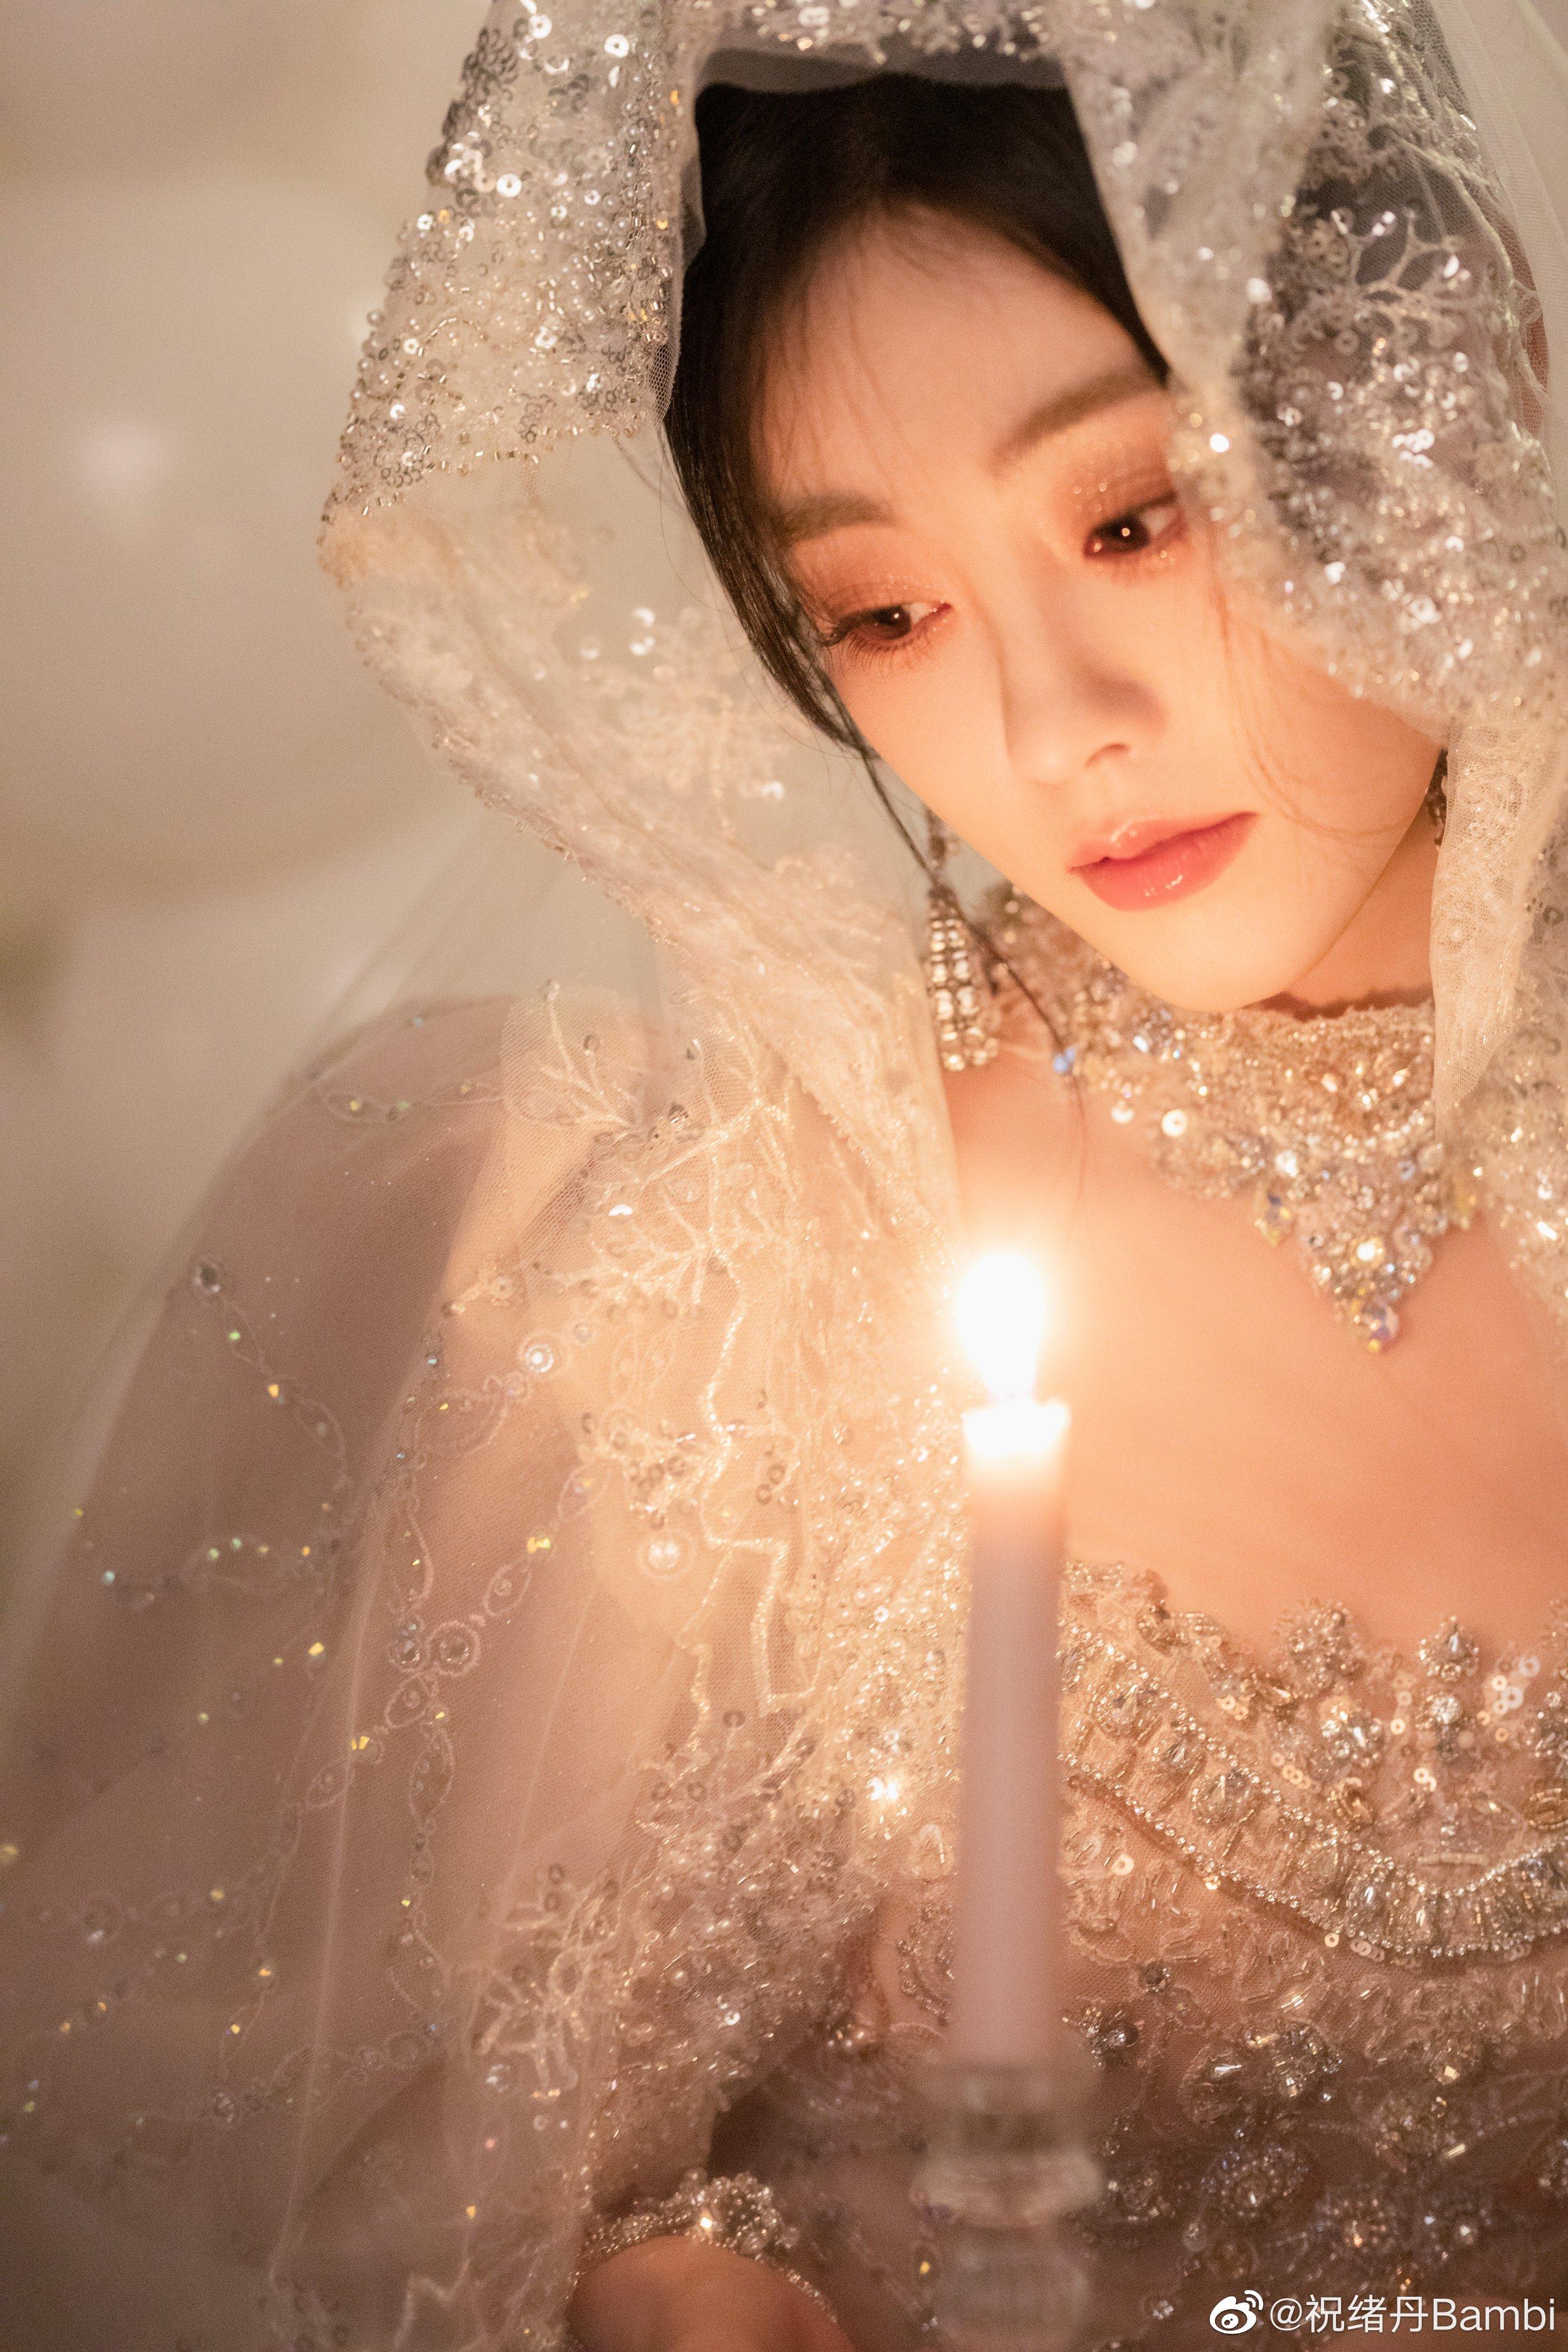 祝绪丹晒公主裙造型生日写真 头戴皇冠手持蜡烛浪漫梦幻,1 (000)